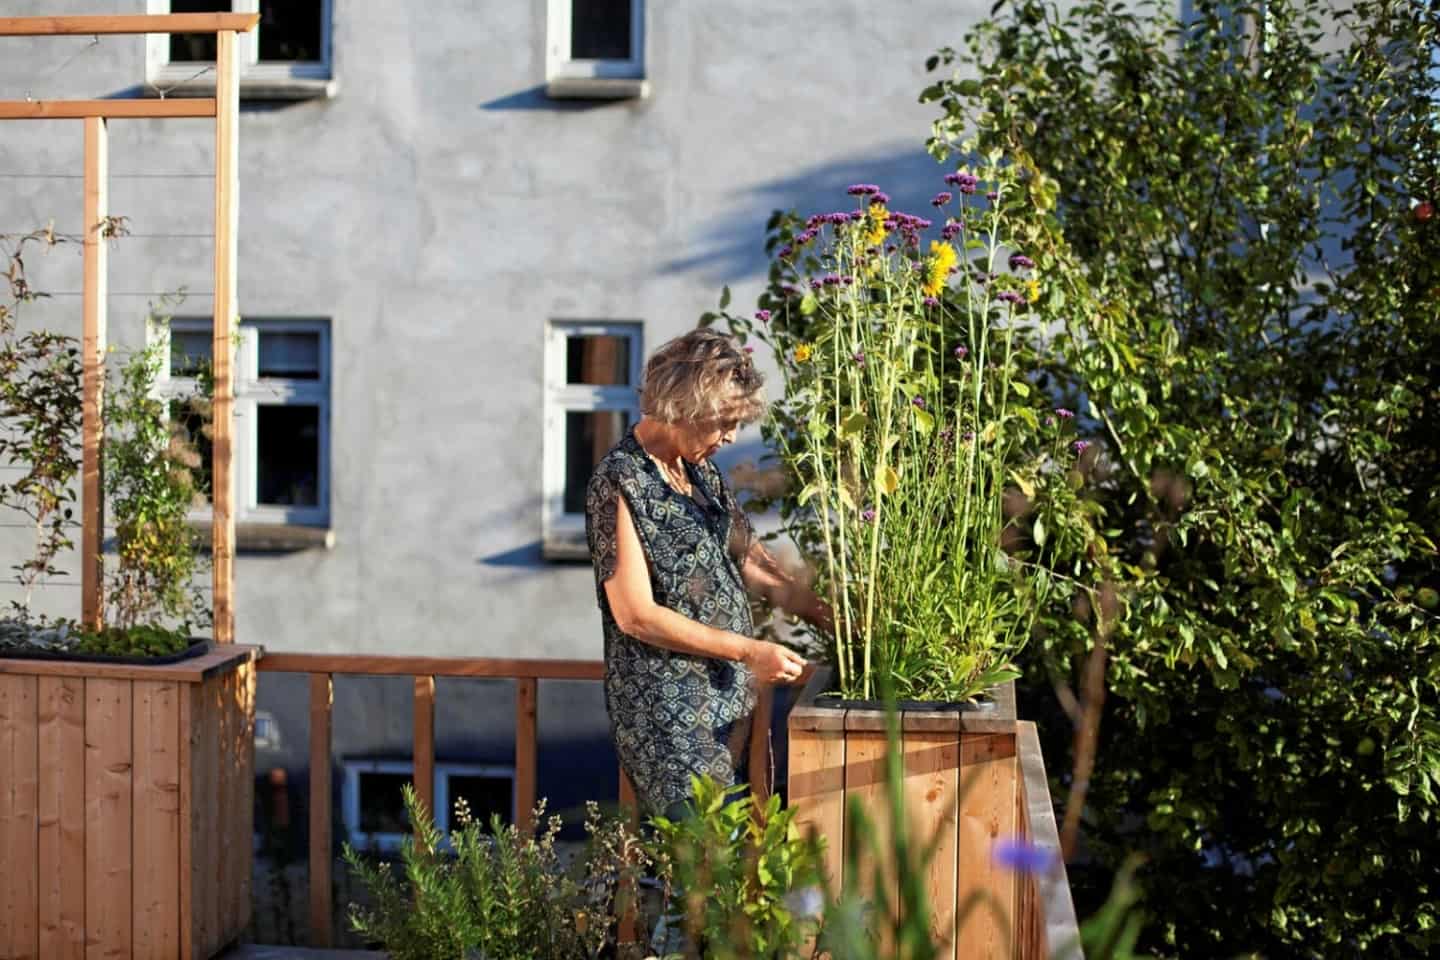 planter skal til din altan | ugeavisen.dk